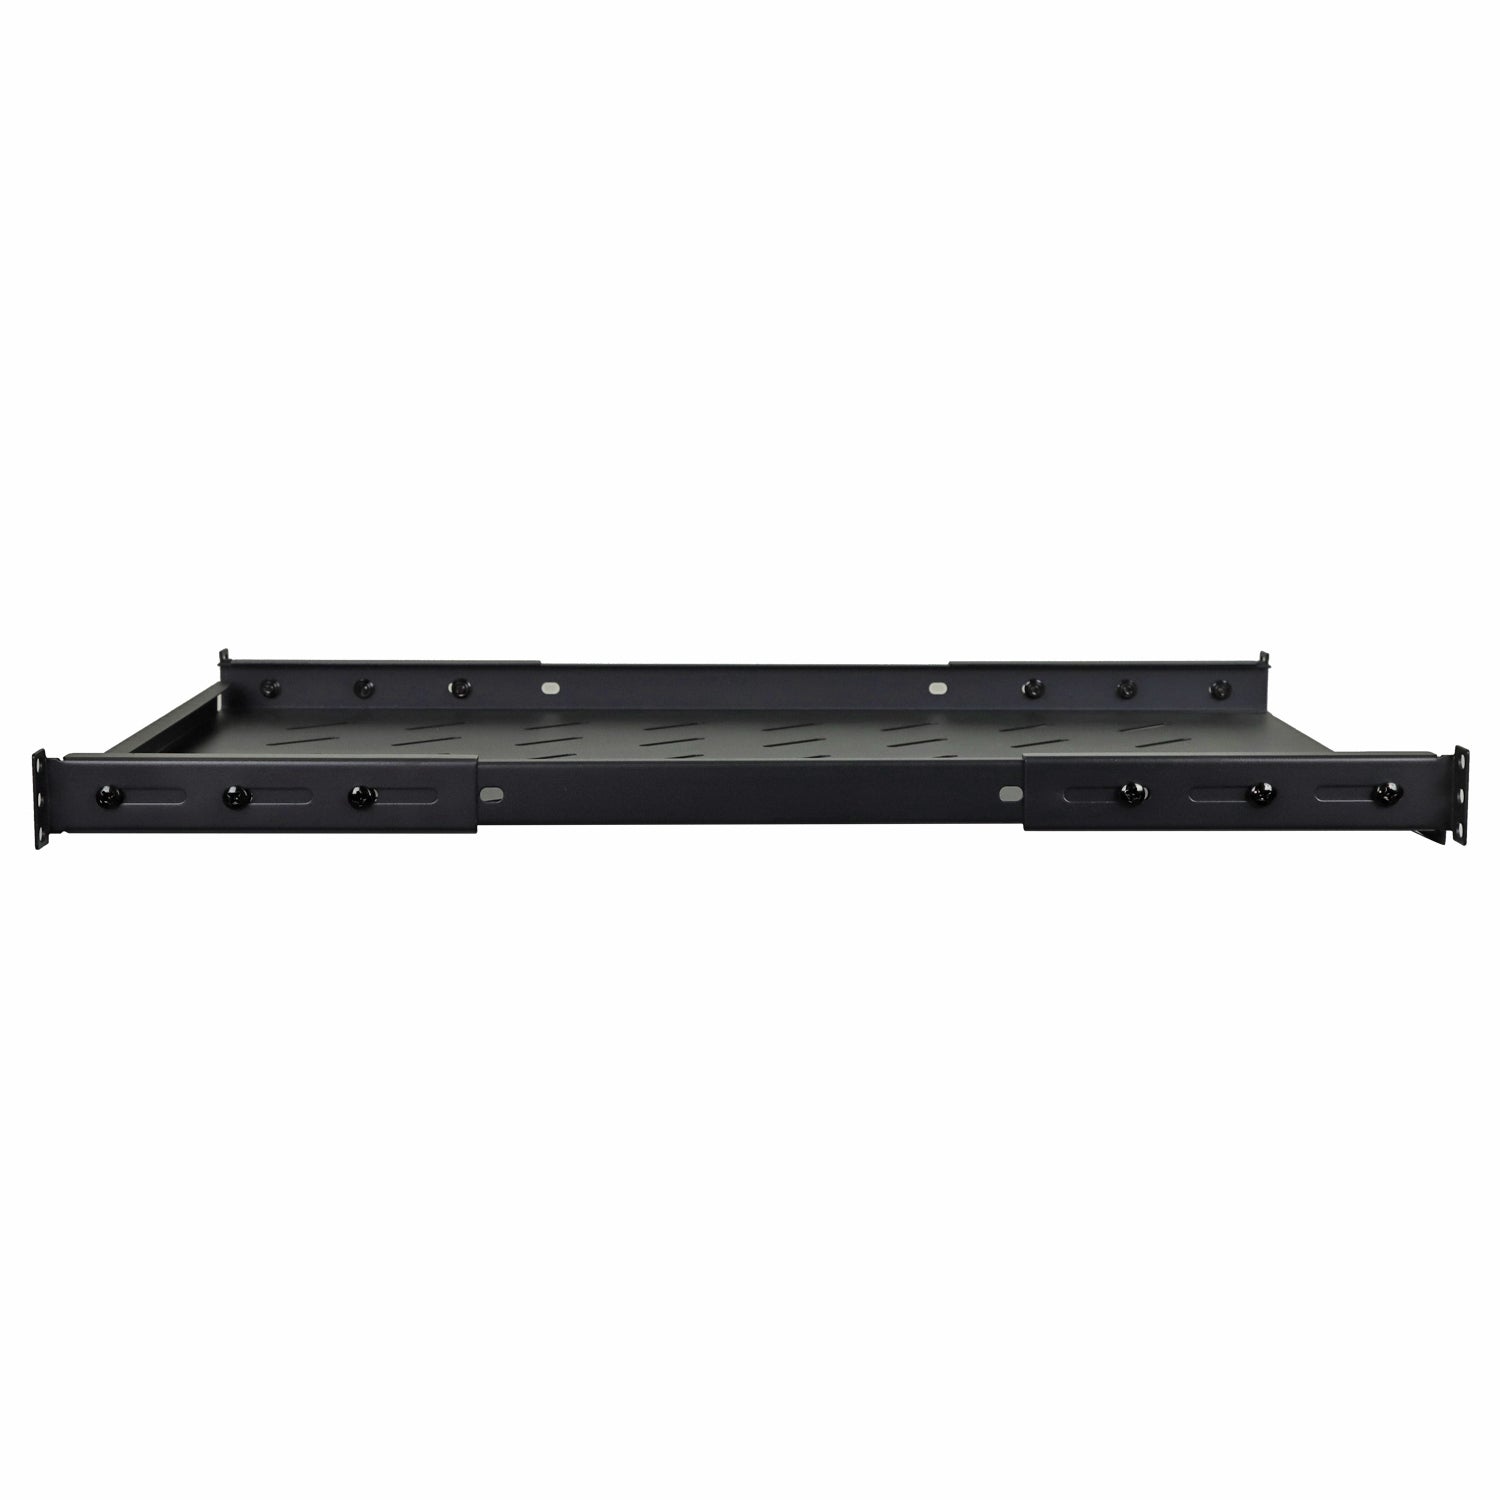 Aeons Universal 1U Rack Mount Vented 4-Post Fixed Shelf, Adjustable Mounting, 26-inch Depth